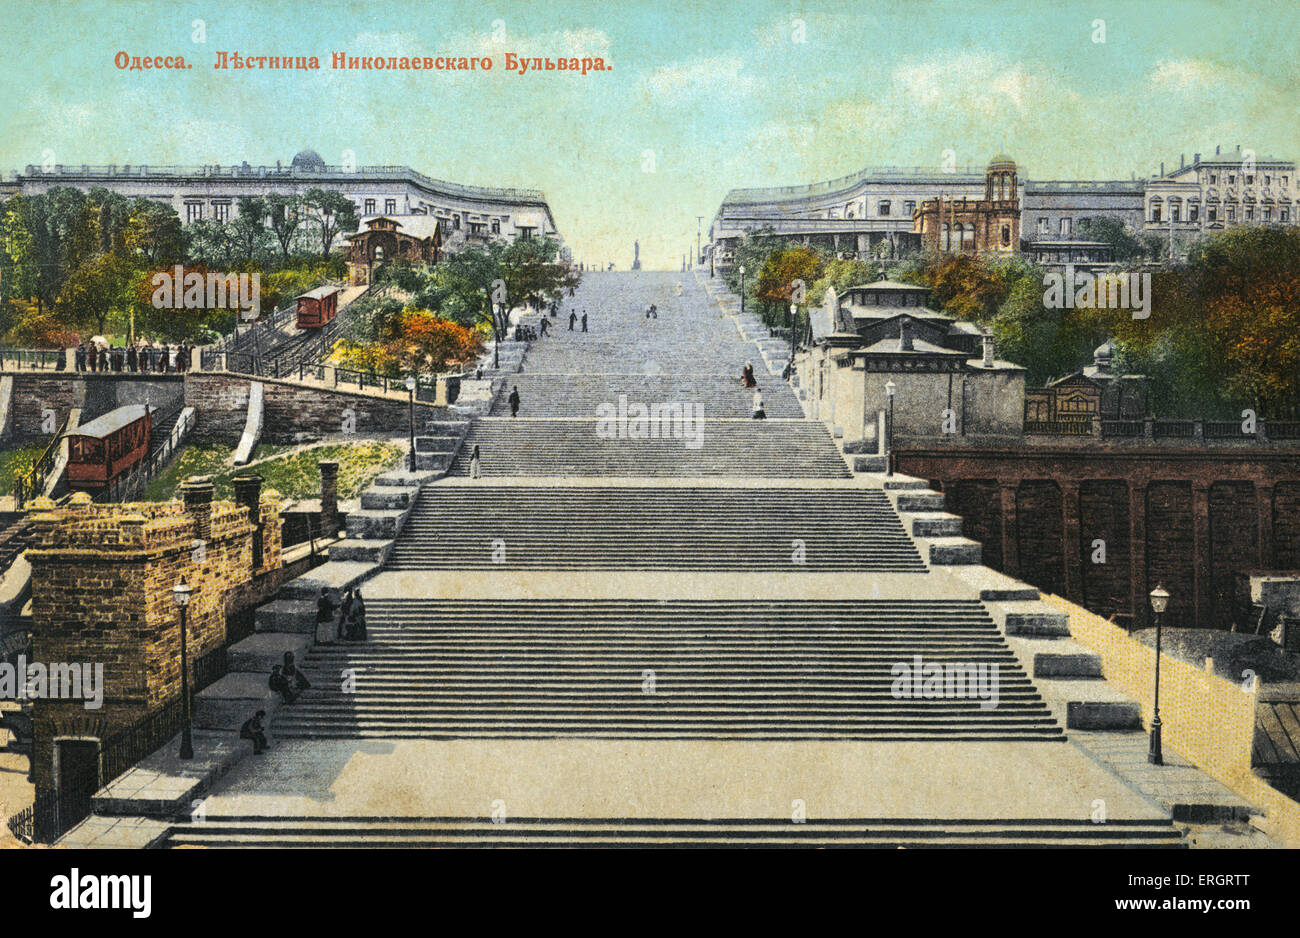 Die berühmte Treppe in Odessa, Ukraine von Sergei Eisensteins Film Panzerkreuzer Potemkin verewigt. Russische Farb Postkarte. Stockfoto